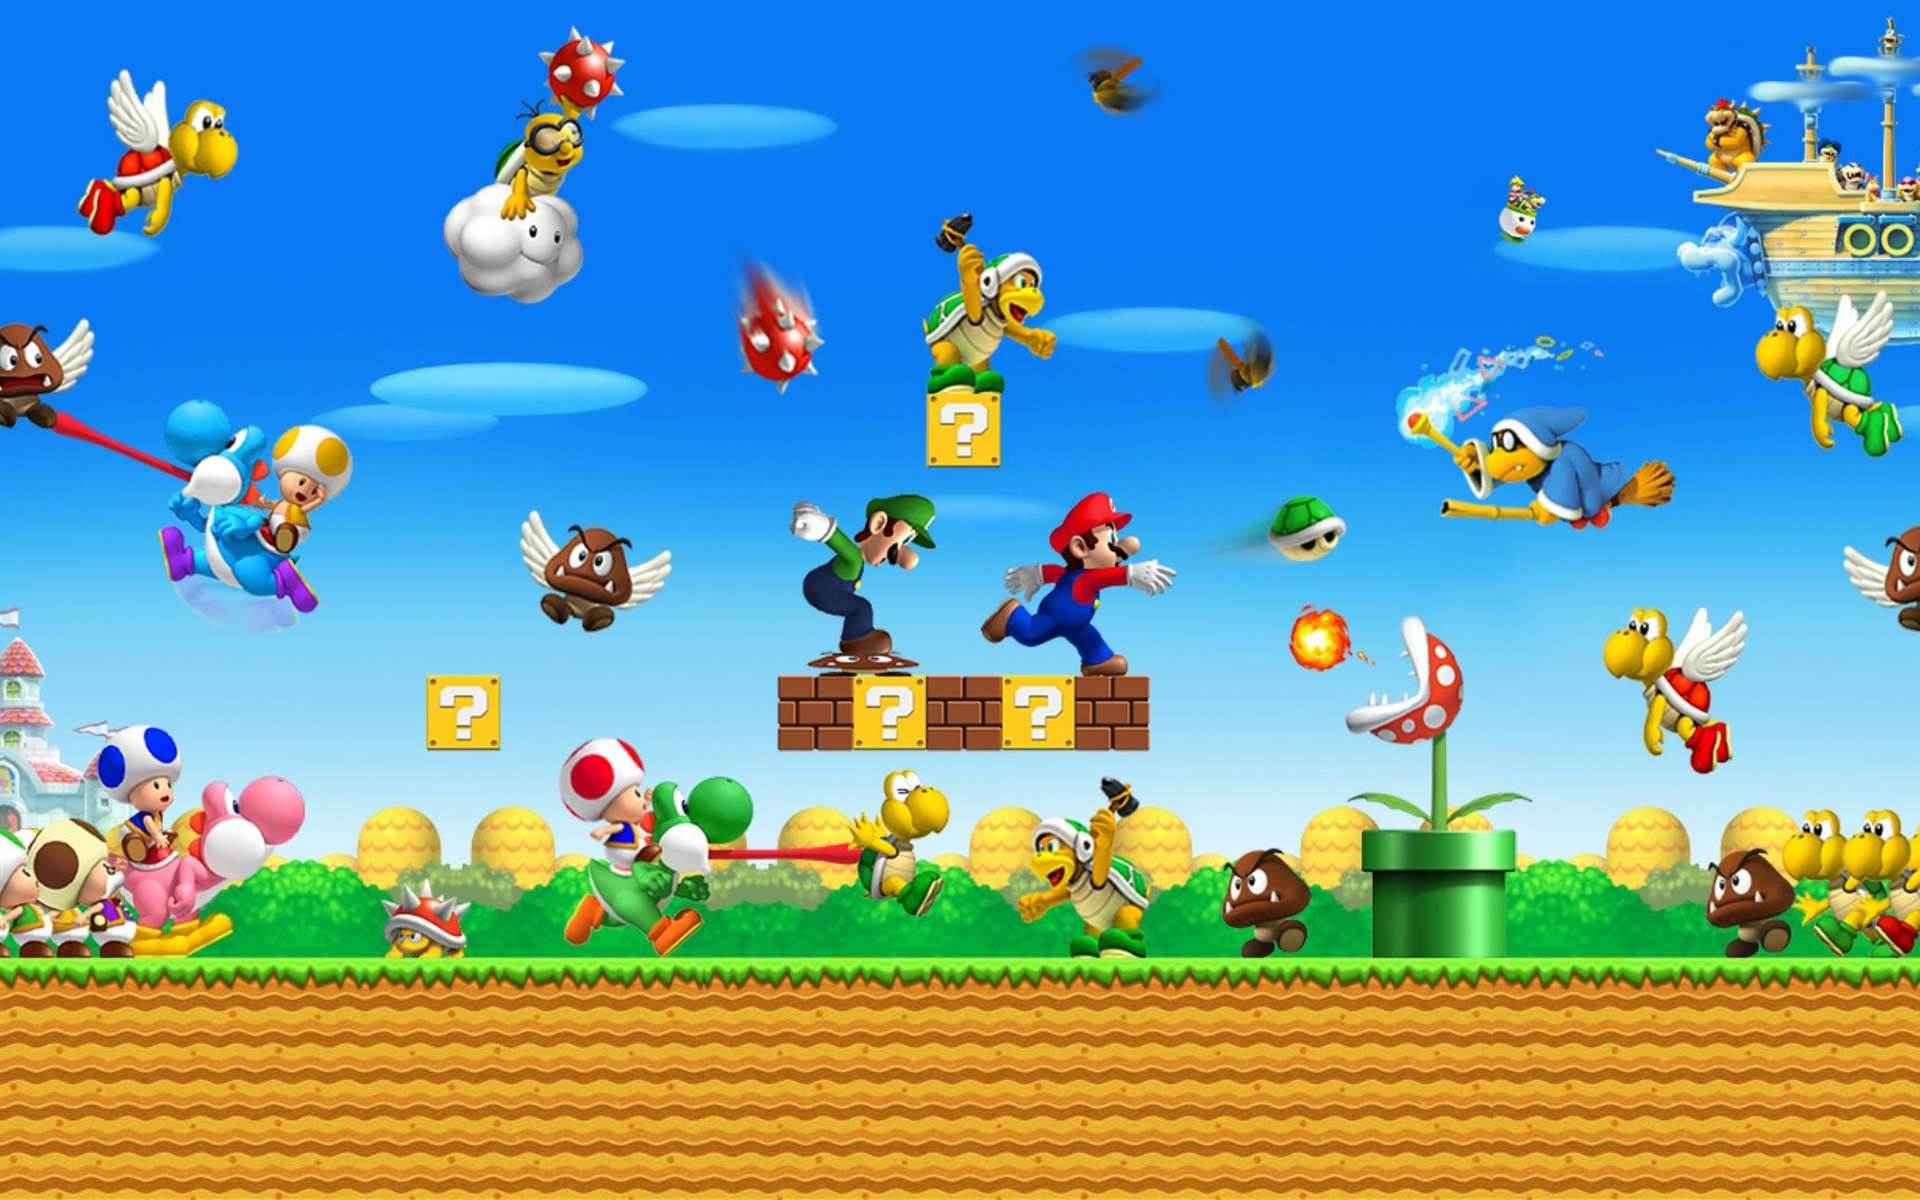 Nintendo Mario Wallpapers